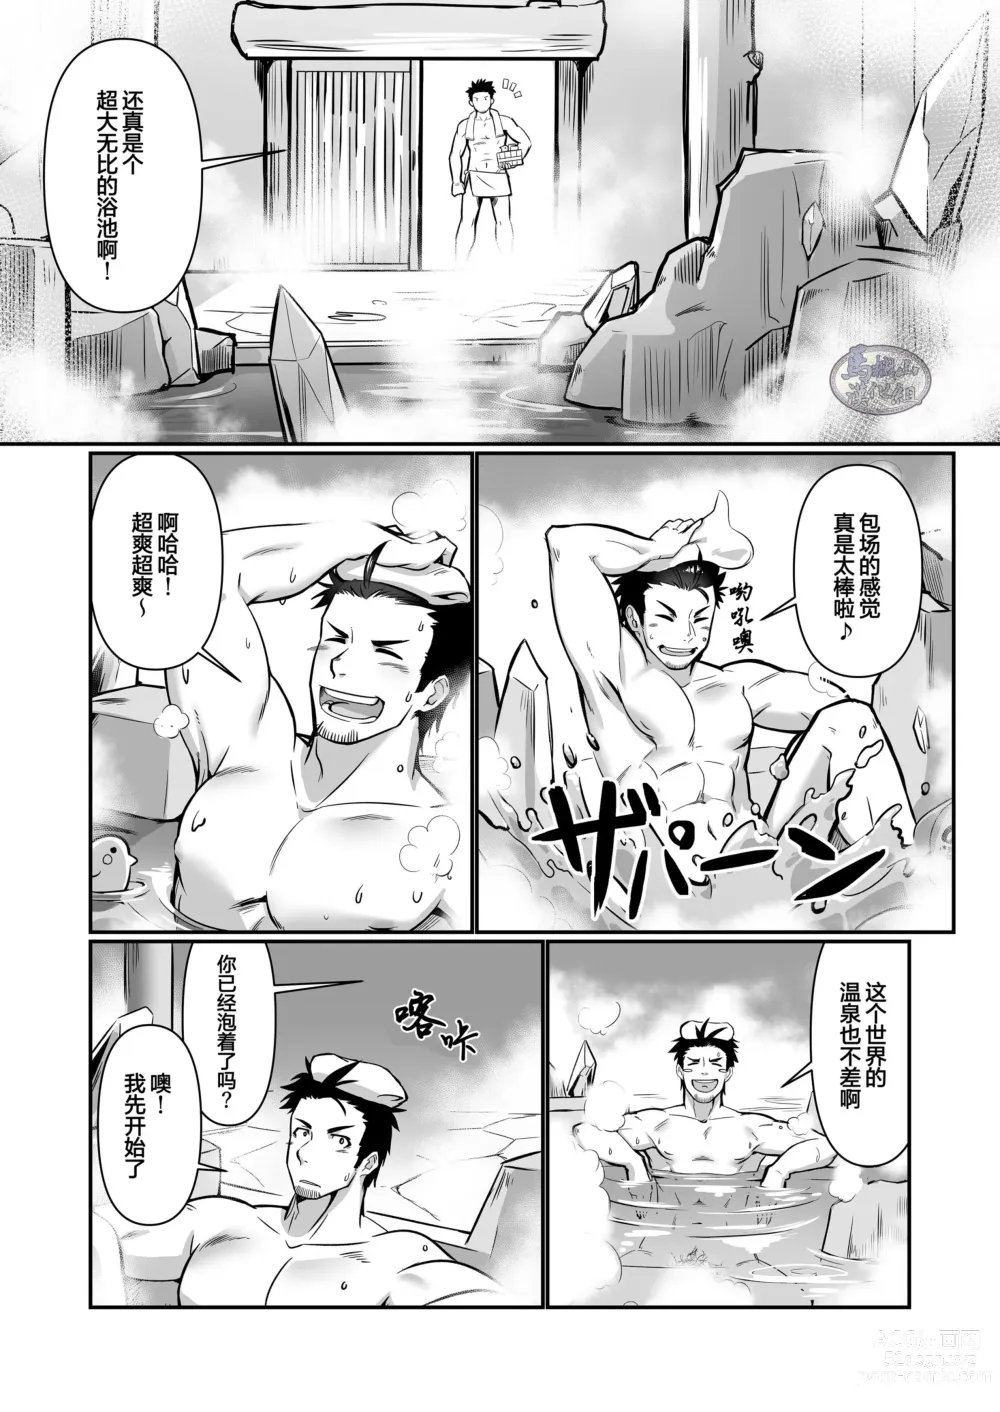 Page 8 of doujinshi 关于我在转生之后身边全是肌肉男的奇闻轶事2